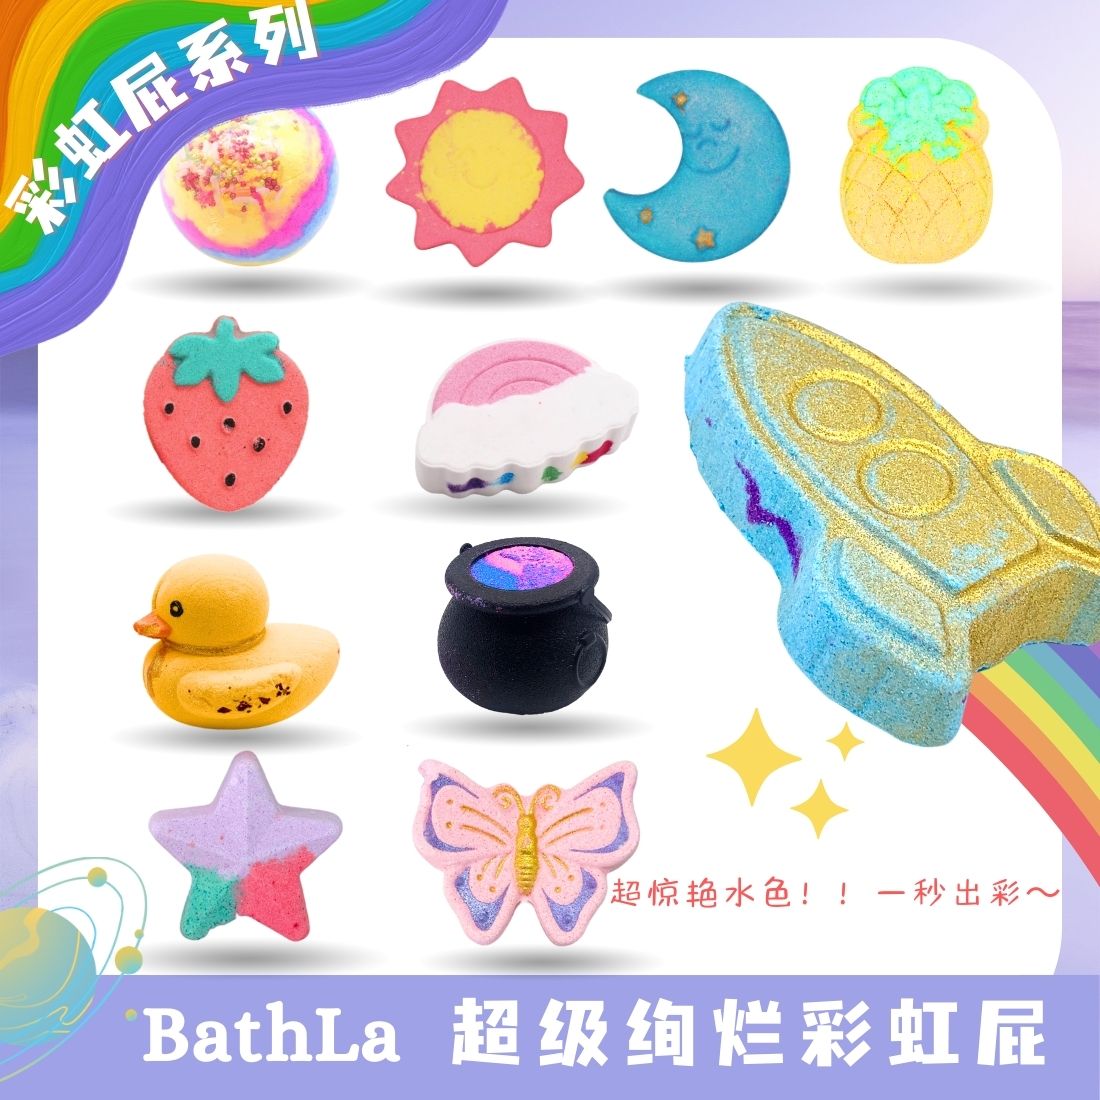 BathLab|彩虹泡澡球宝宝网红沐浴香氛超多泡泡浴球儿童专用精油浴